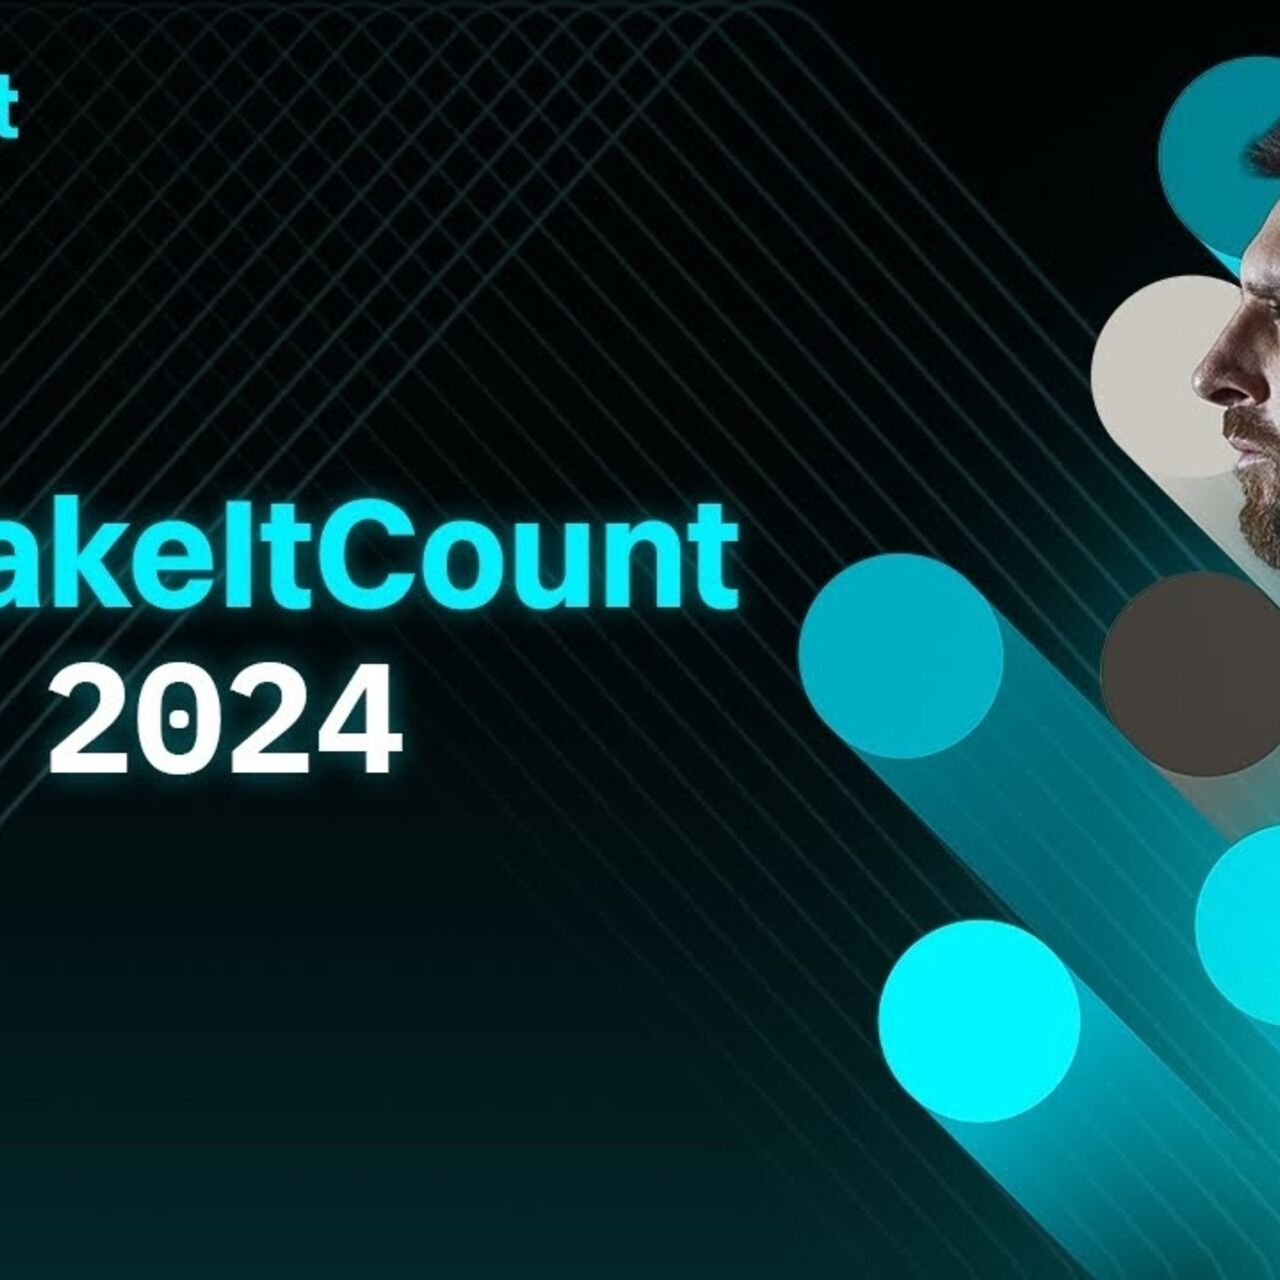 Լիոնել Մեսսի․ #MakeItCount 2024 ֆիլմը խորհրդանշում է կրիպտո փոխանակման Bitget-ի և արգենտինացի ֆուտբոլիստի միջև կիսված հիմնարար արժեքները։